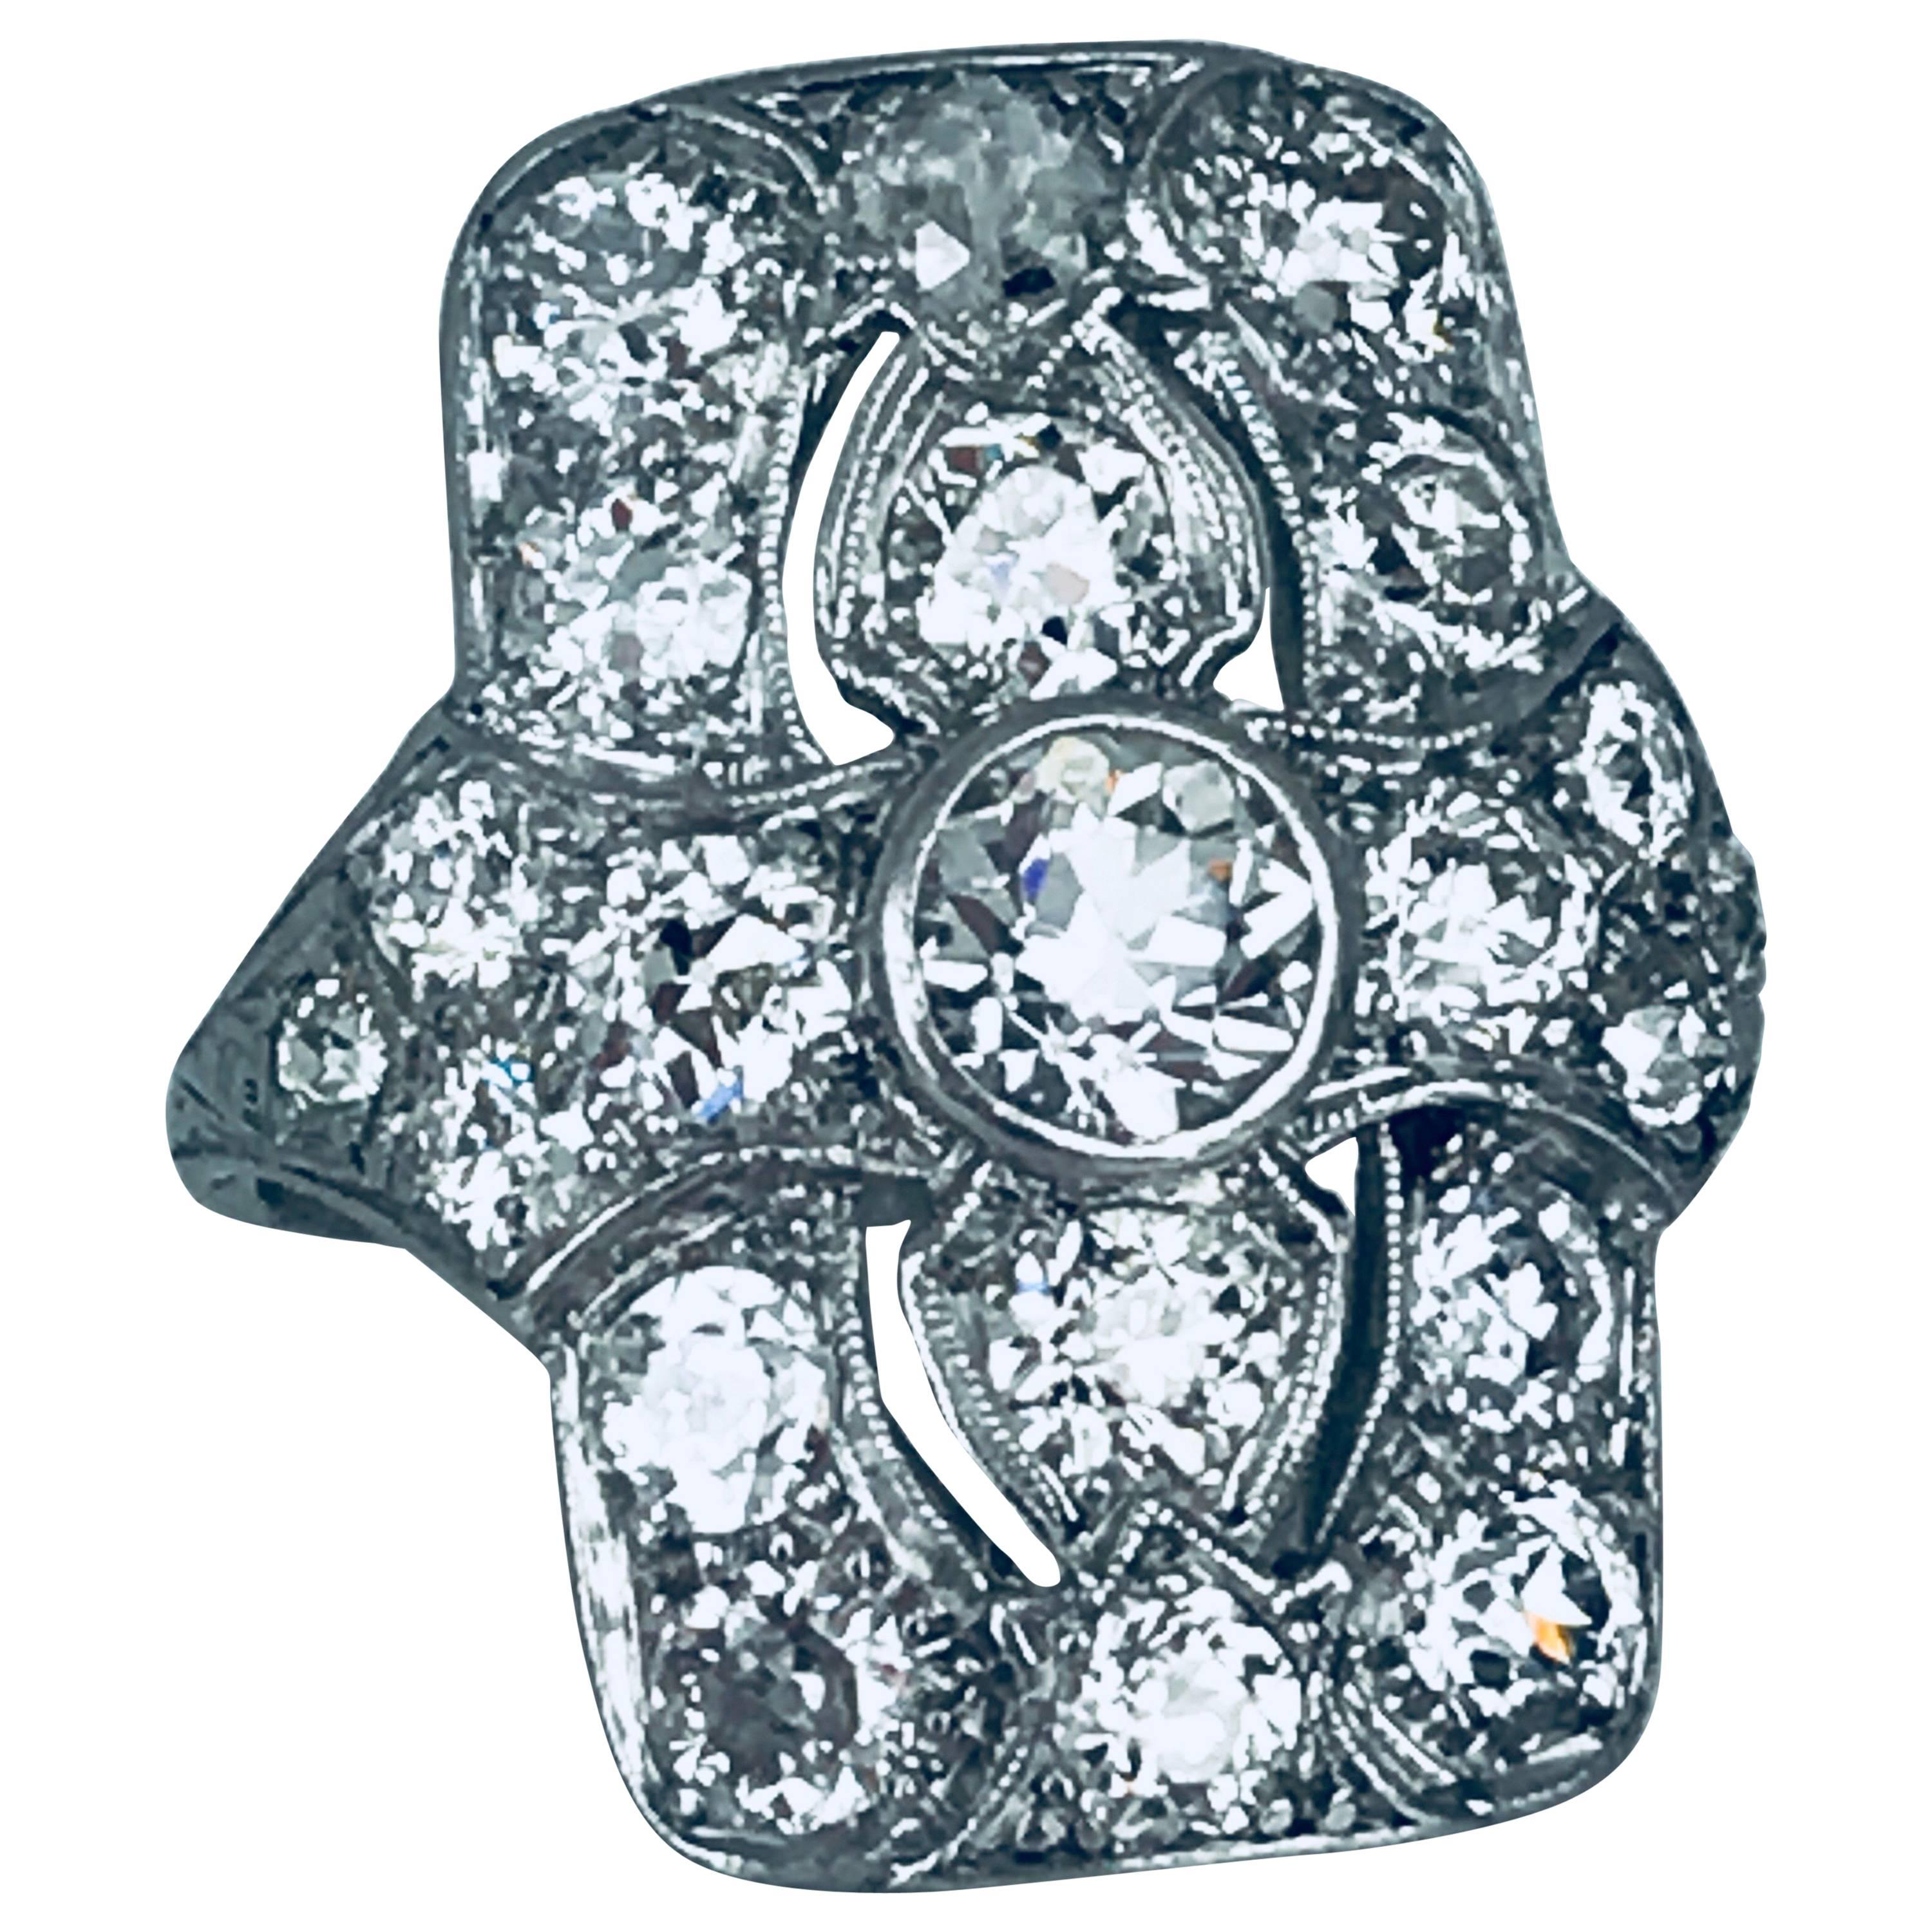 Art Deco, circa 1915 Platinum 2.87 Carat Diamond Ring, European Cut Diamonds For Sale